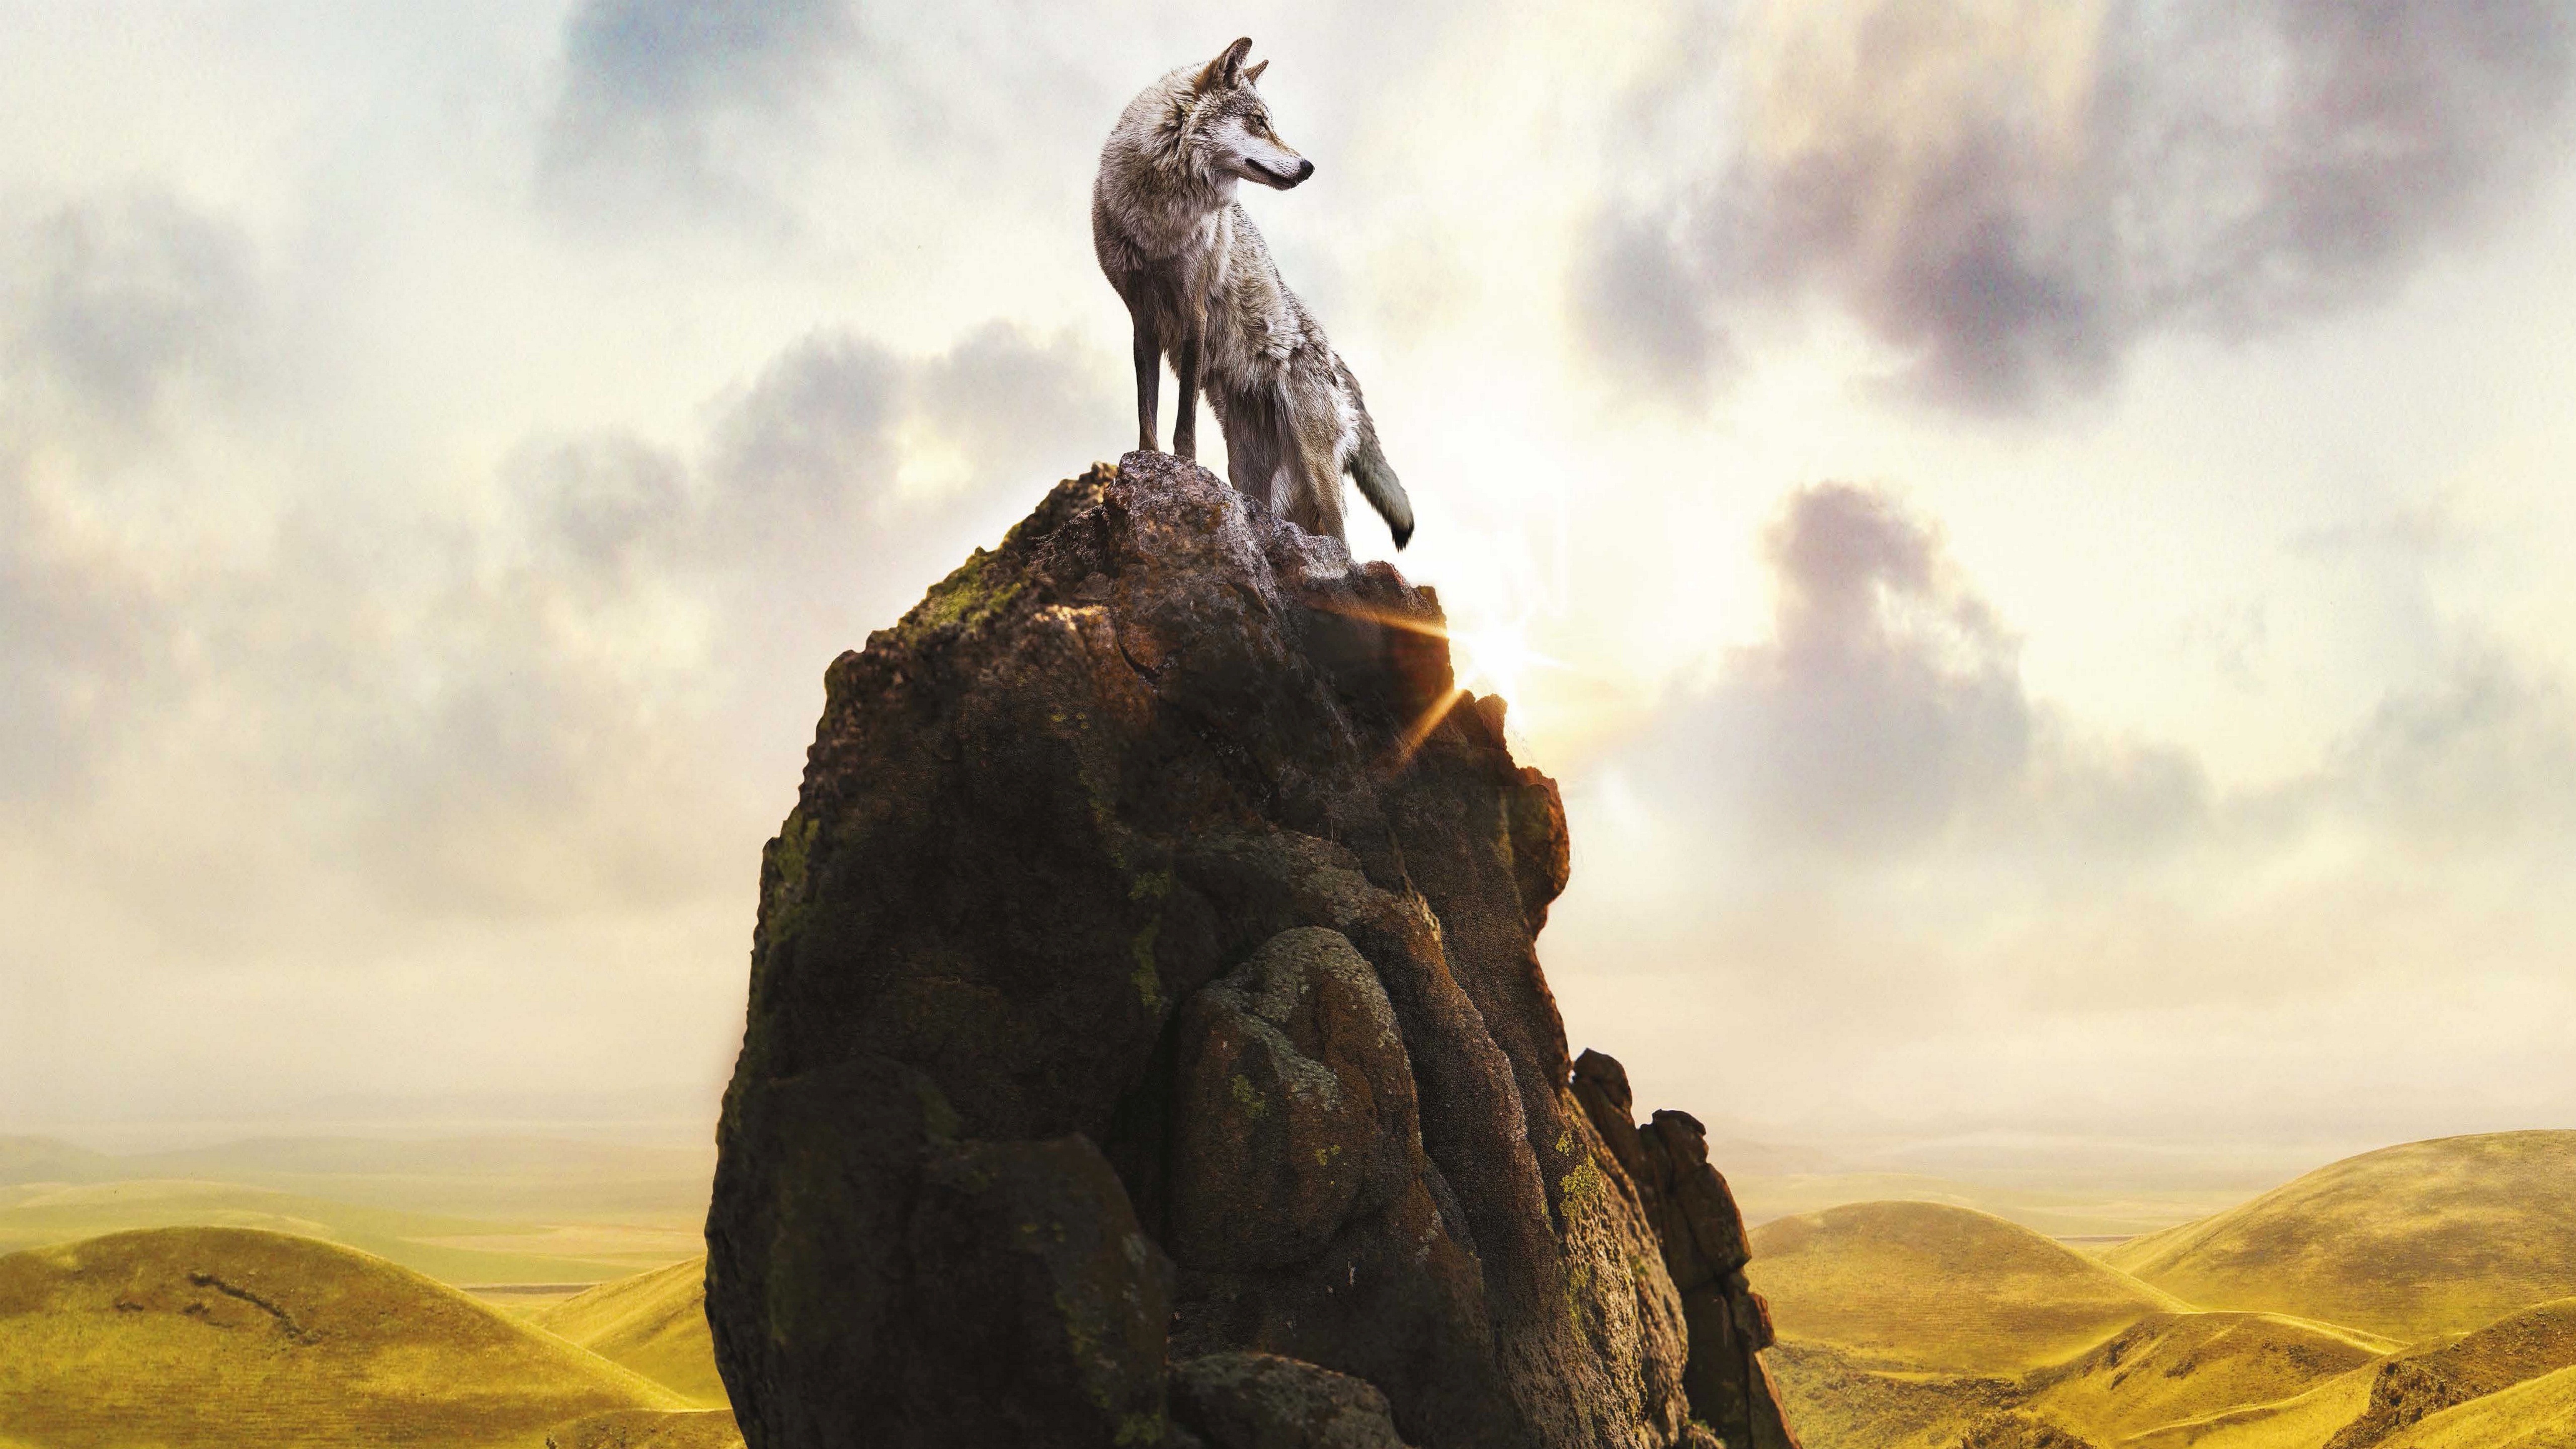 Wolf 4k 5k 8k - Wolf On Top Of Mountain - HD Wallpaper 